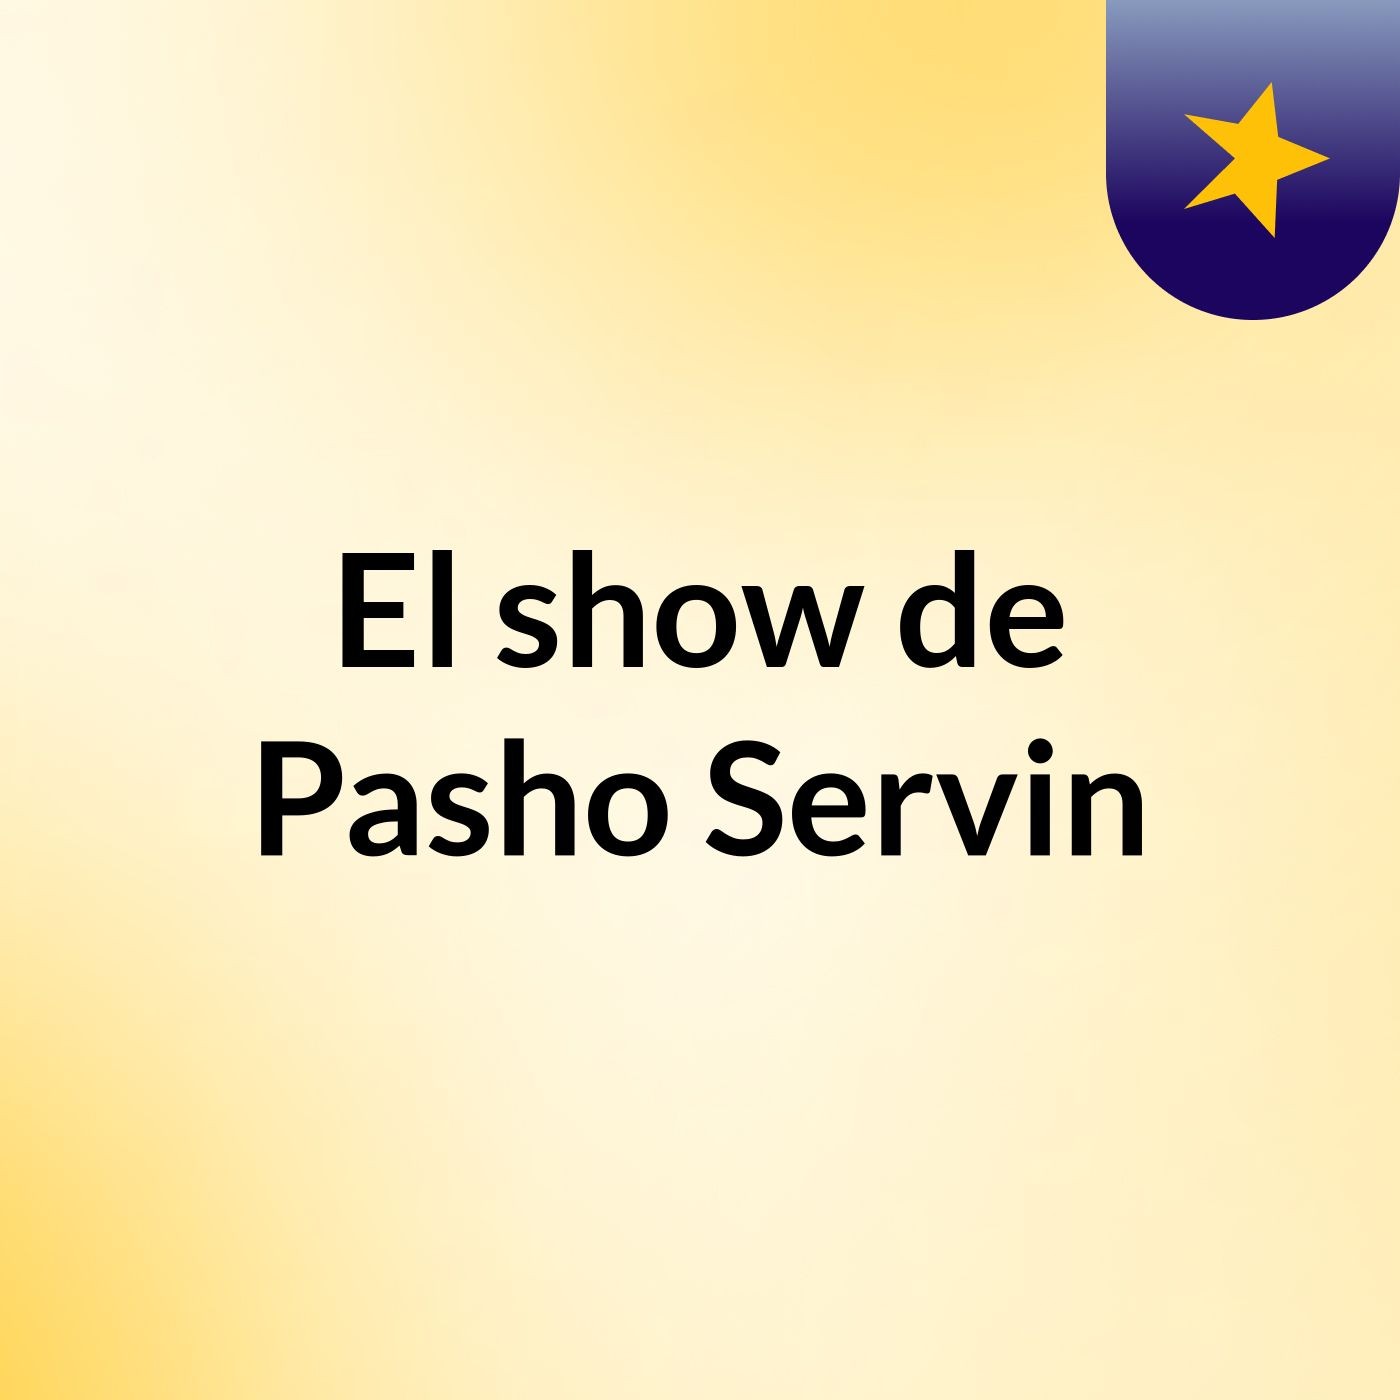 El show de Pasho Servin